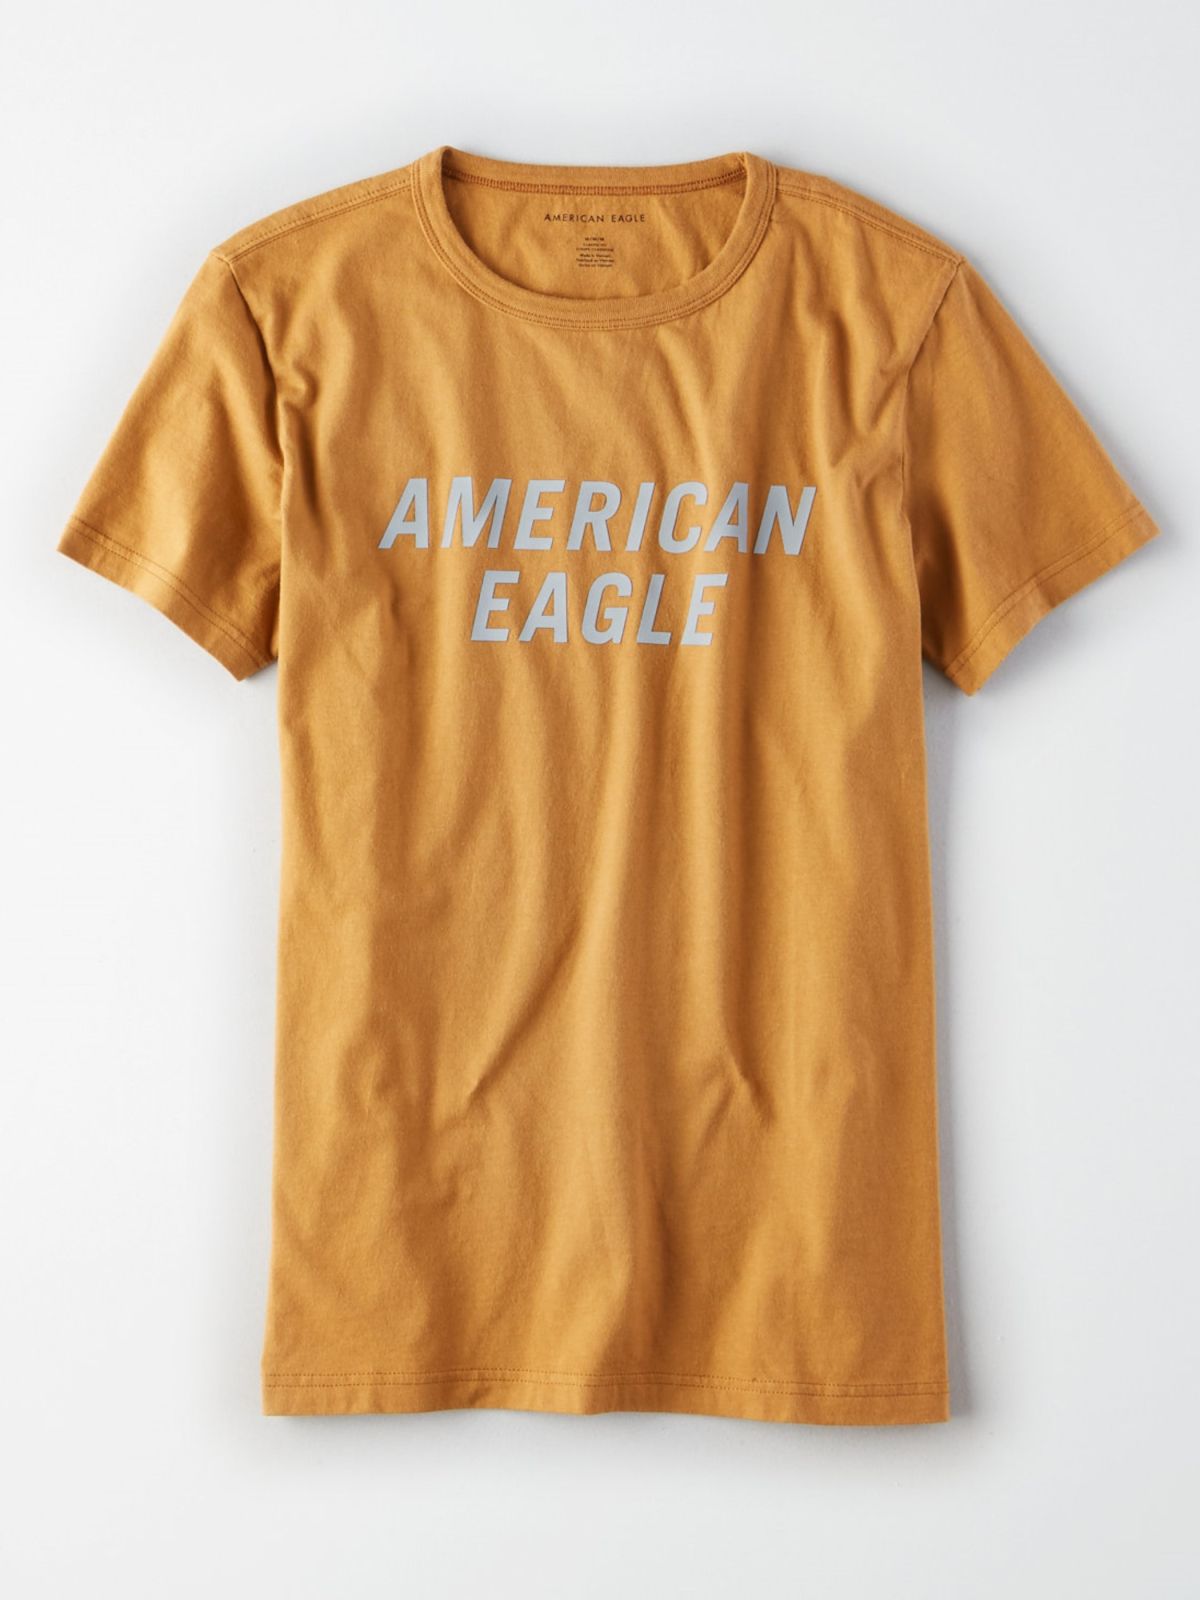  טי שירט לוגו / גברים של AMERICAN EAGLE